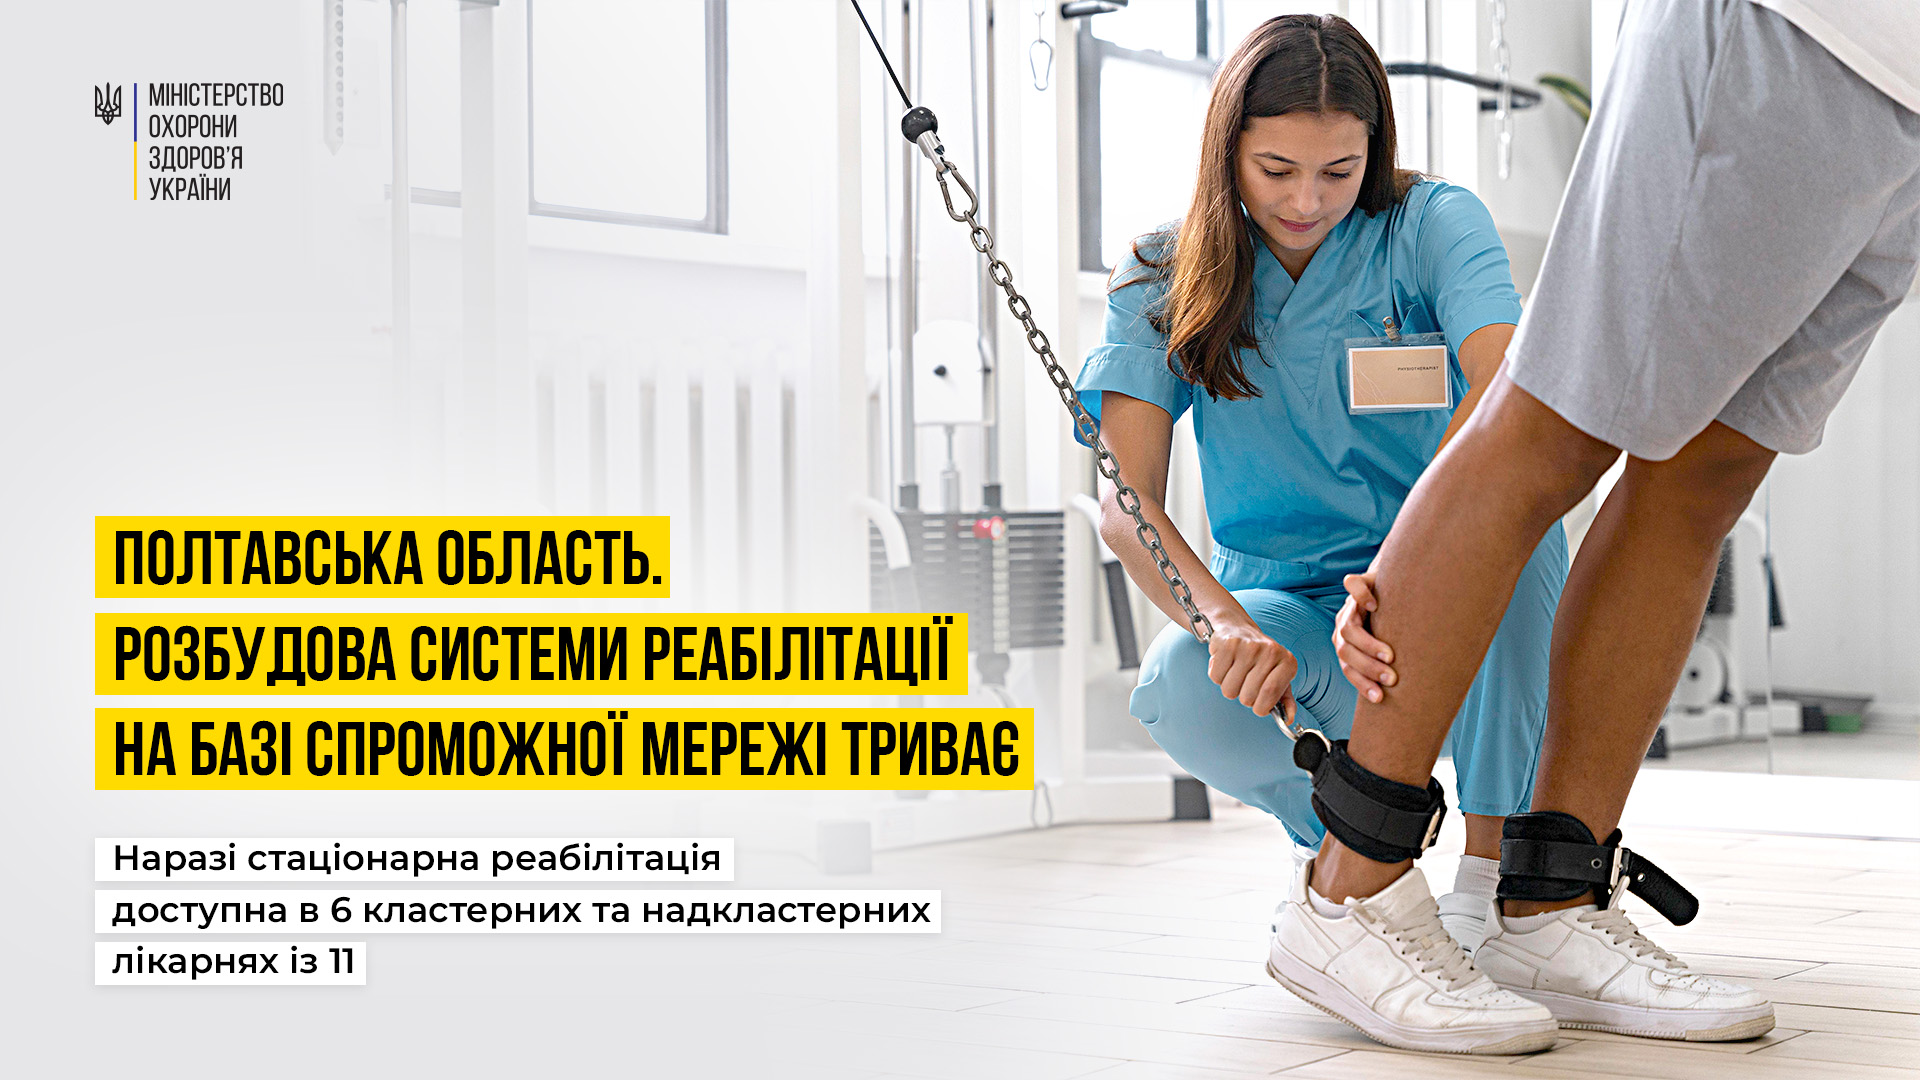 Шість надкластерних та кластерних лікарні Полтавщини надають безоплатну стаціонарну реабілітаційну допомогу 